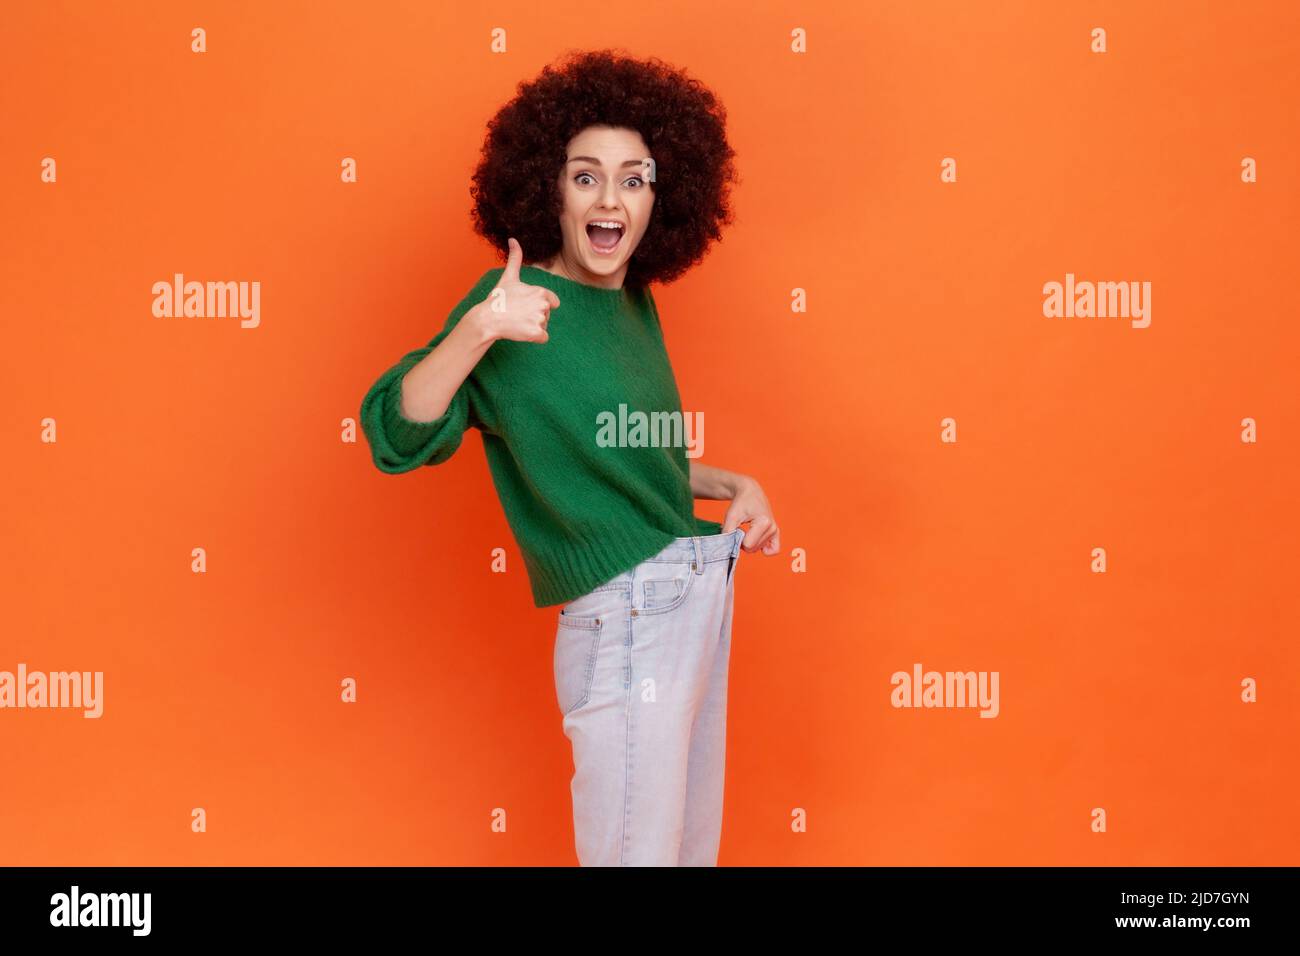 Porträt einer positiv aufgeregten Frau mit Afro-Frisur, die einen grünen Pullover im lässigen Stil trägt und einen schlanken Bund in einer großen Hose und Daumen nach oben zeigt. Innenaufnahme des Studios isoliert auf orangefarbenem Hintergrund. Stockfoto